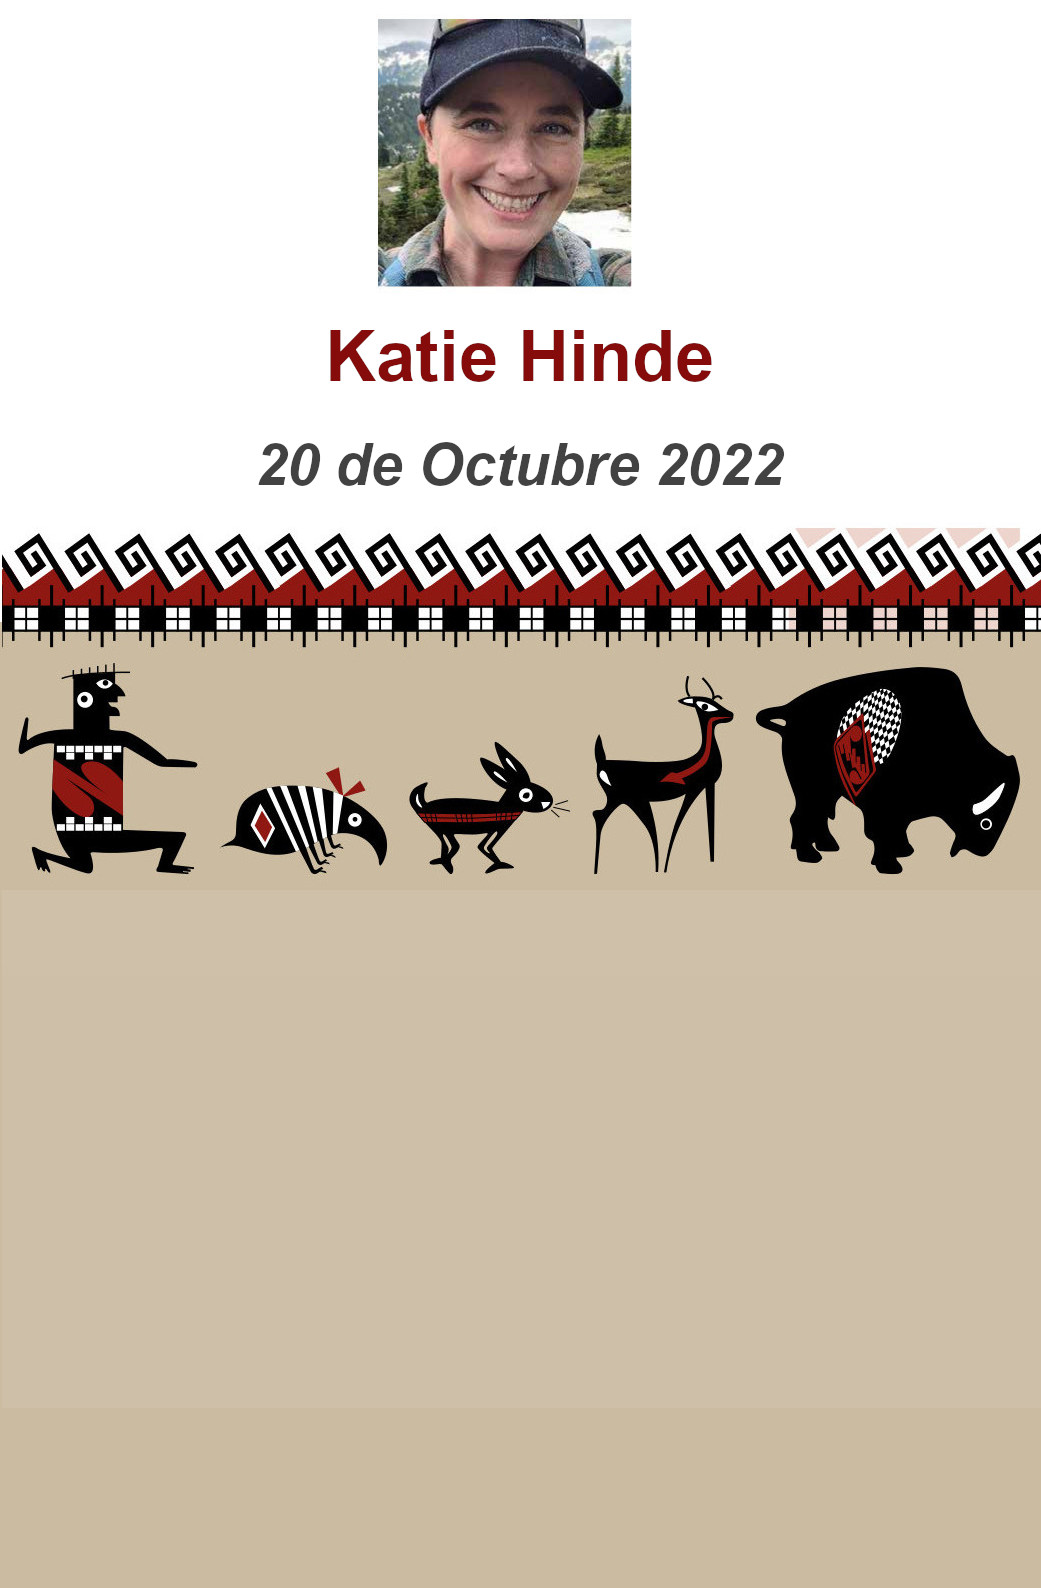 Katie Hide